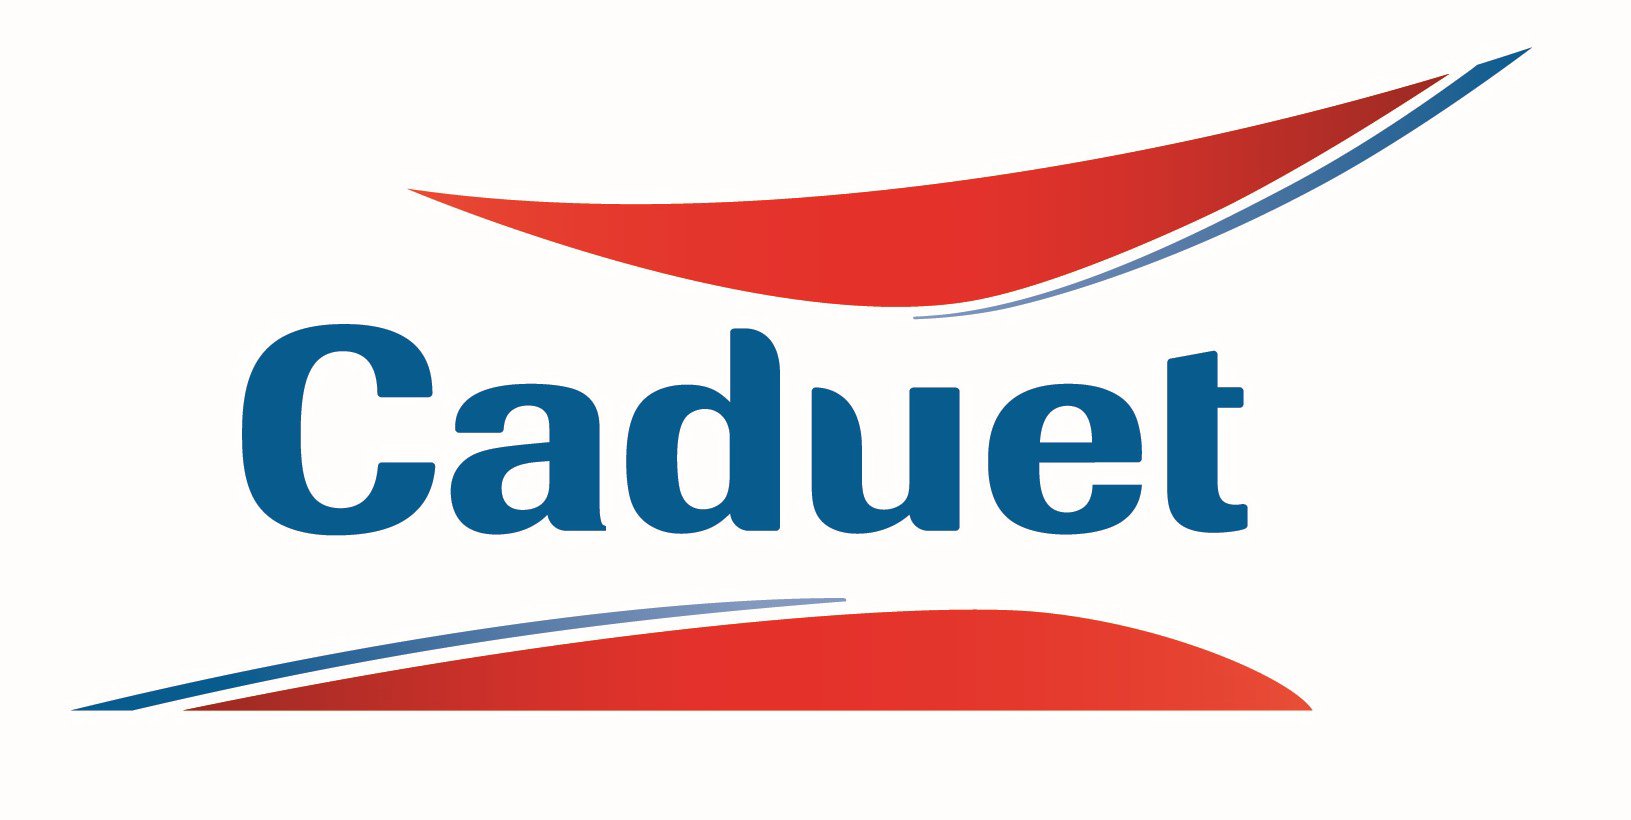 Trademark Logo CADUET